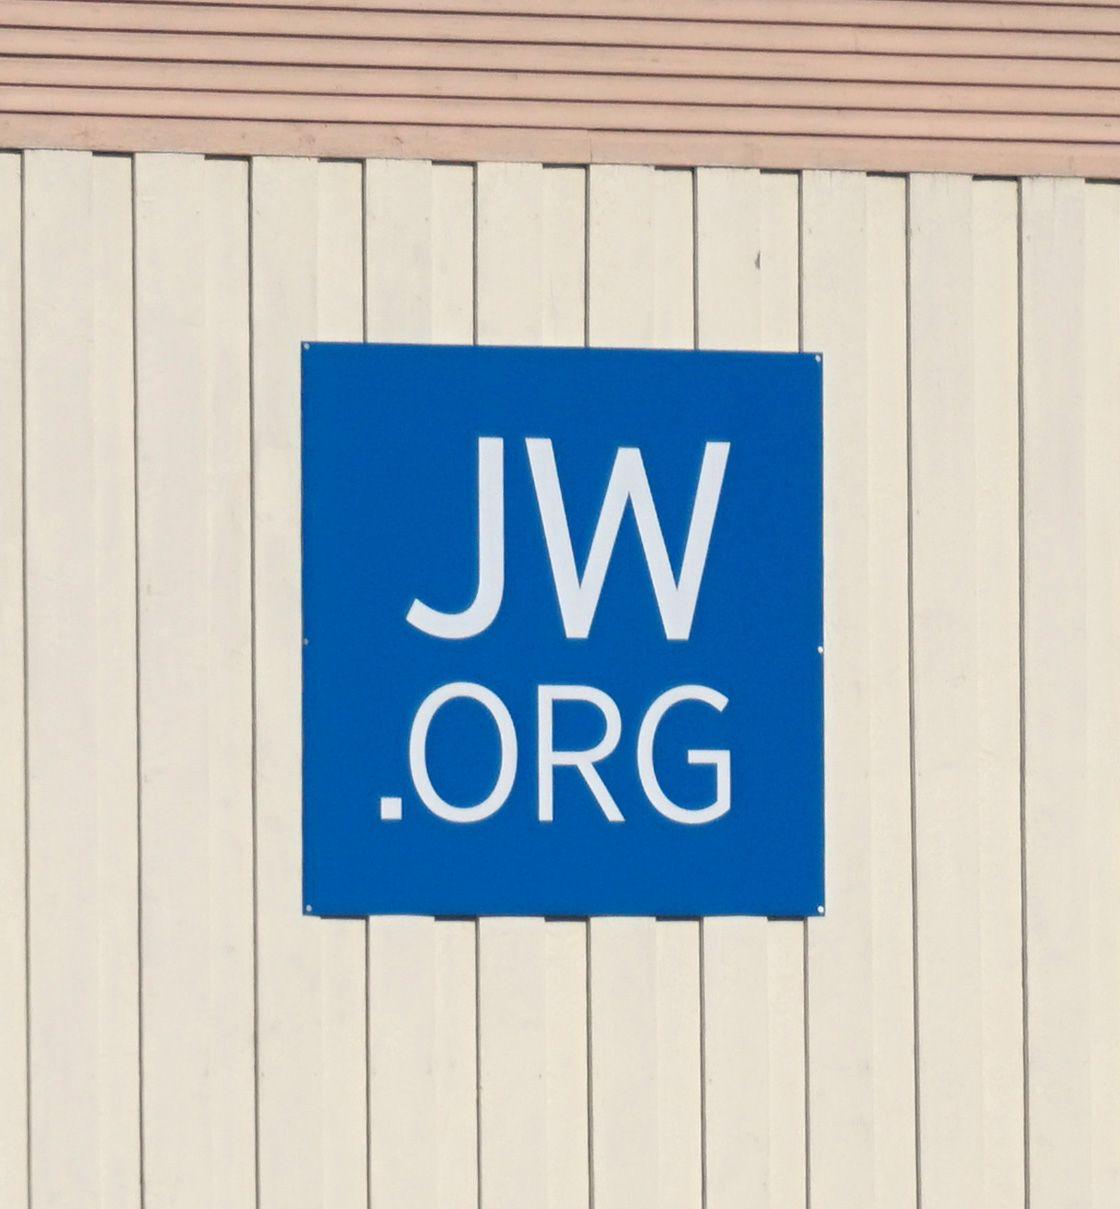 Jw.org Logo - File:JW ORG logo.jpg - Wikimedia Commons